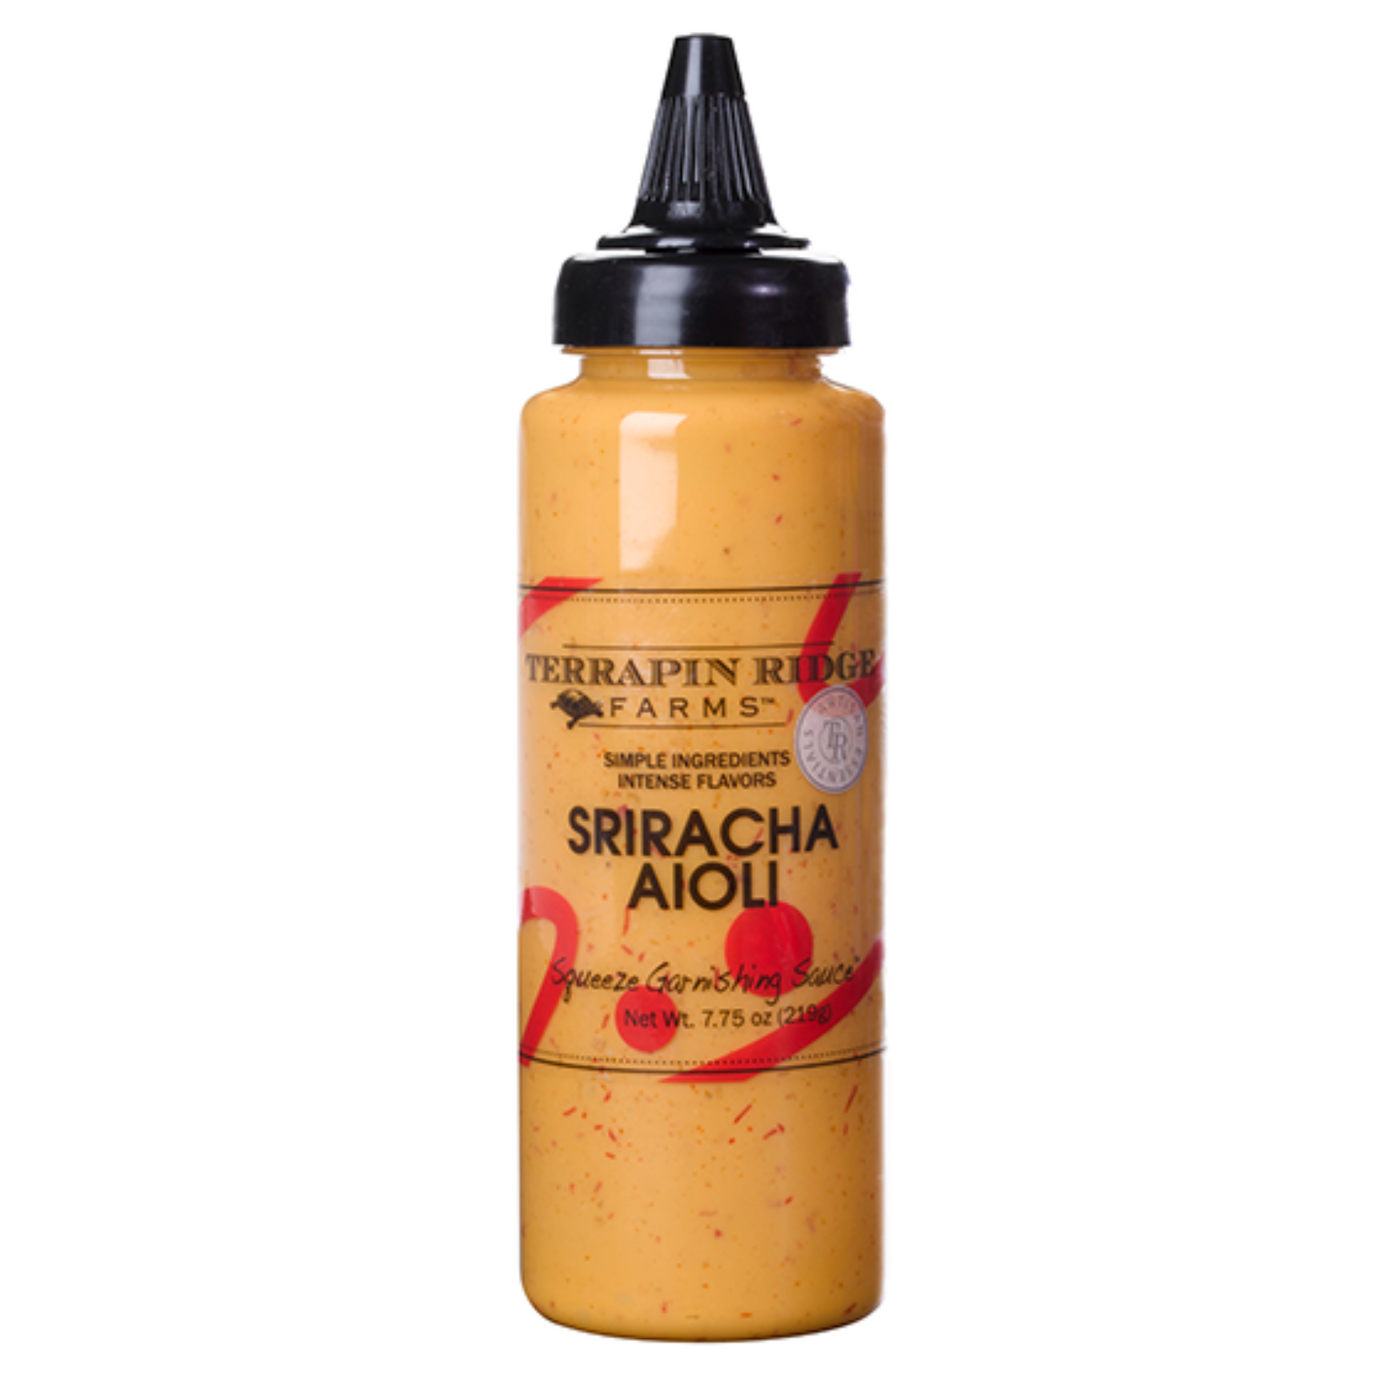 Sriracha Aioli Garnishing Sauce